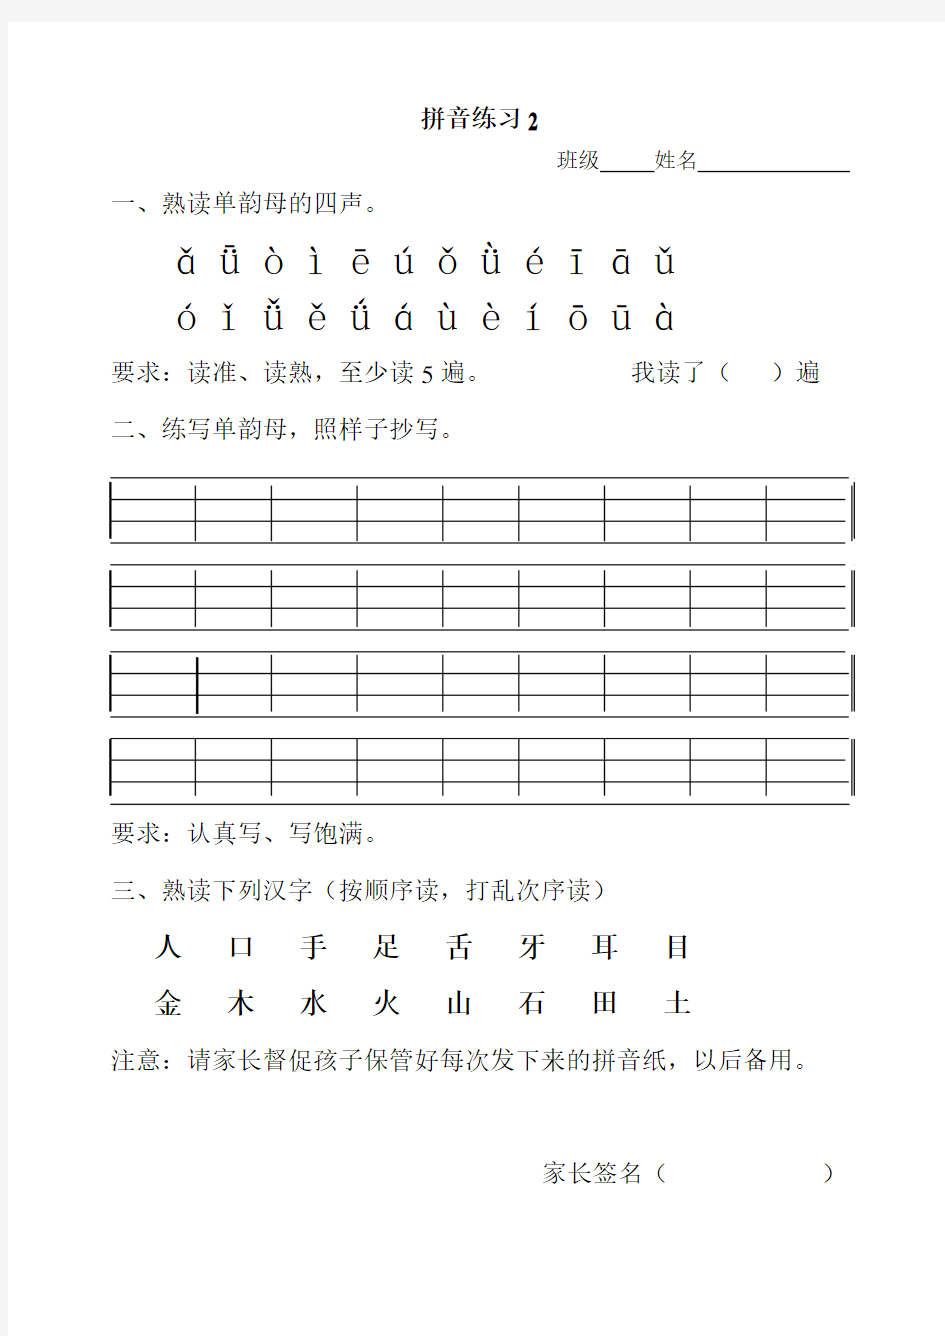 汉语拼音每天朗读内容